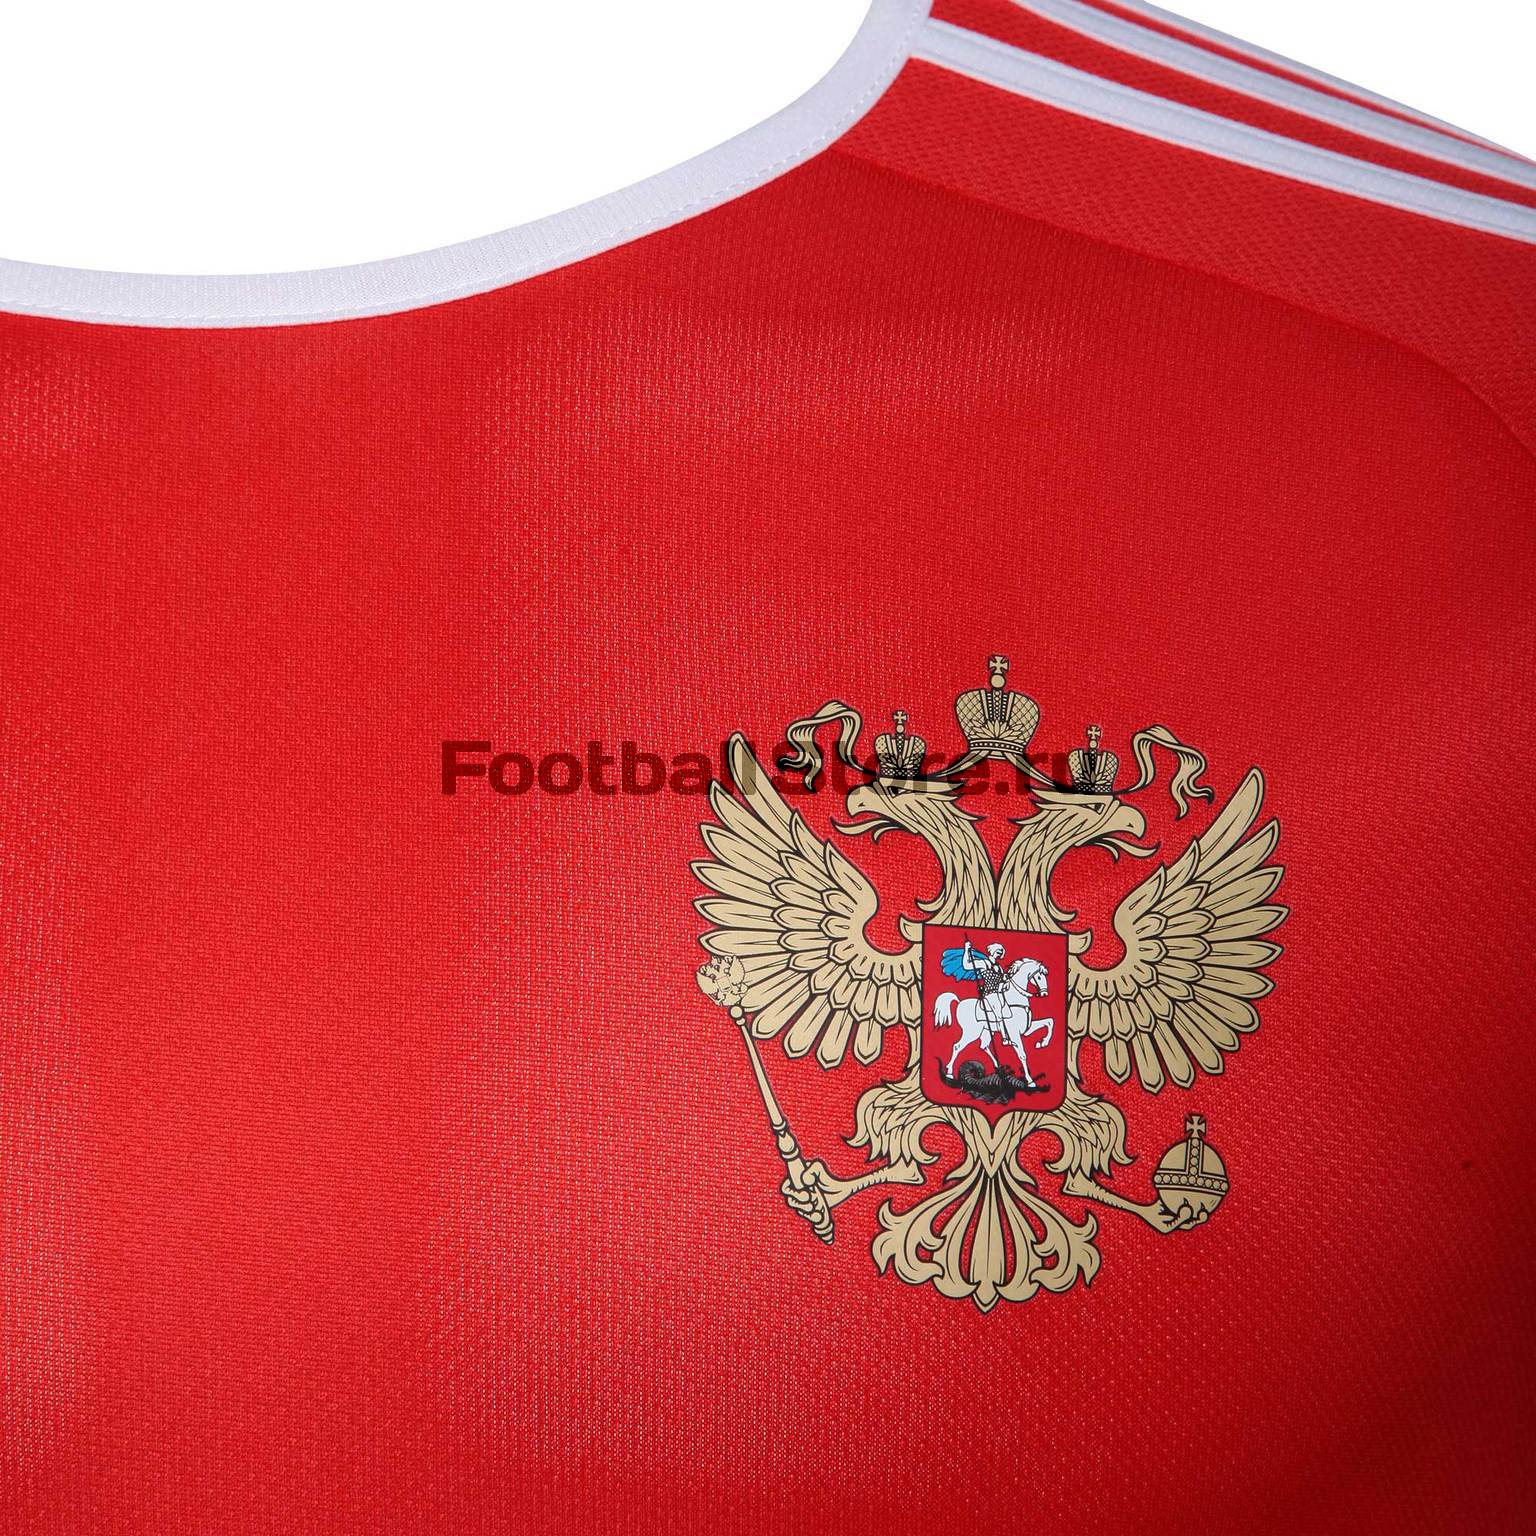 Домашняя футболка Adidas болельщика сборной России CE8512